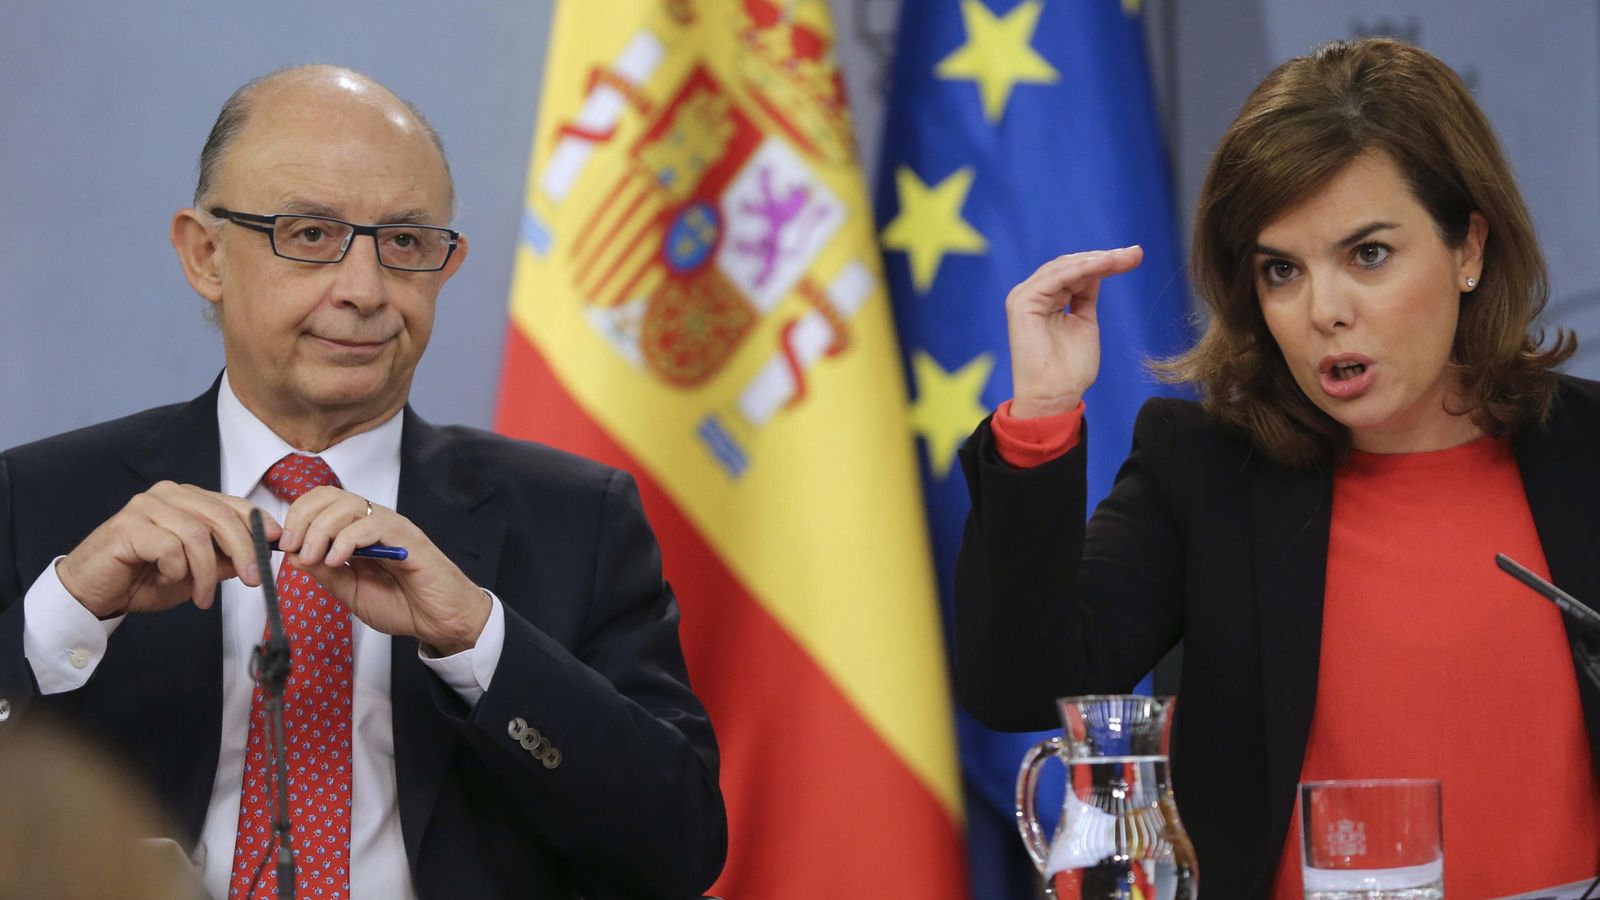 Foto: La vicepresidenta del Gobierno español Soraya Sáenz de Santamaría y el ministro de Hacienda, Cristobal Montoro. (EFE)